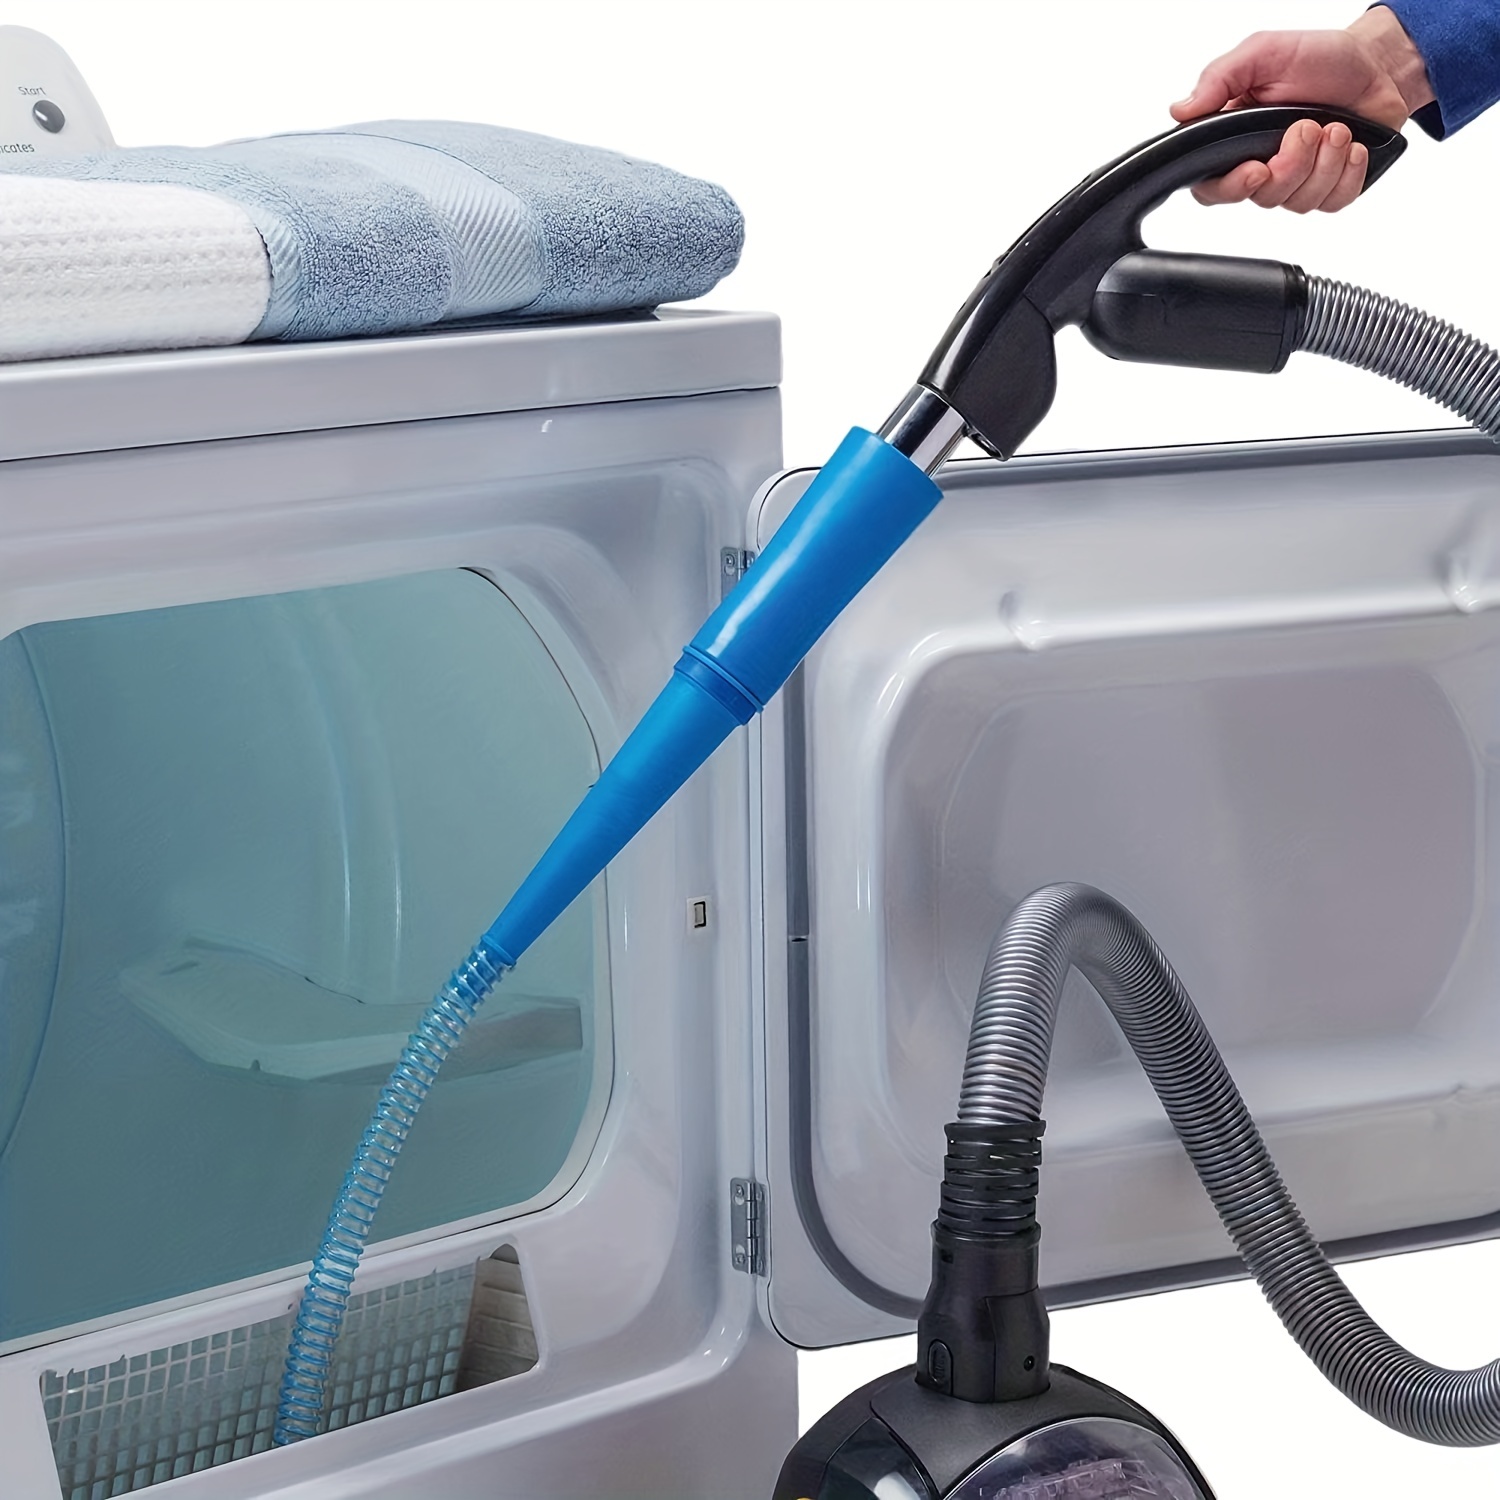 Acquista 1pc spazzola per la pulizia dello sfiato dell'asciugatrice  strumento per la pulizia dei pelucchi per pulire le prese d'aria dell' asciugatrice spolverino per lo sfiato dell'asciugatrice domestica